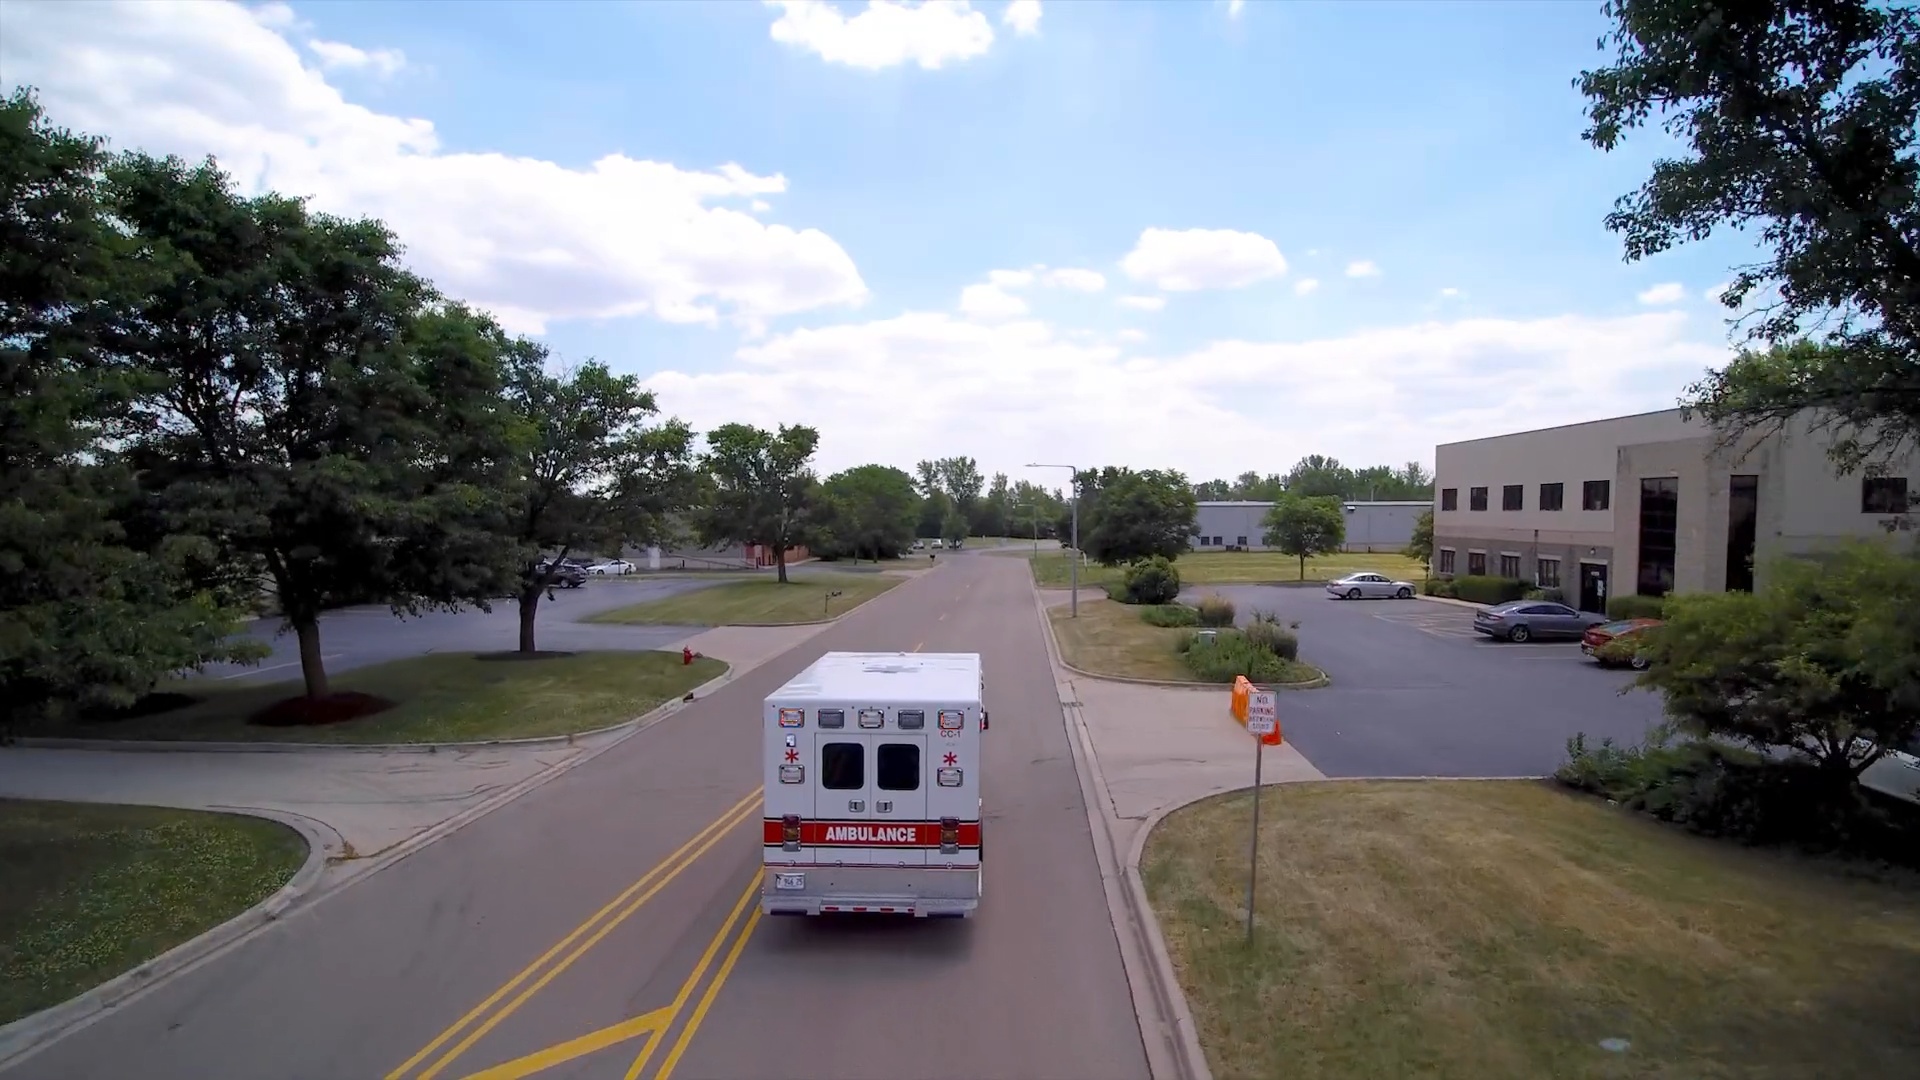 Ridge Ambulance | "Our Story"